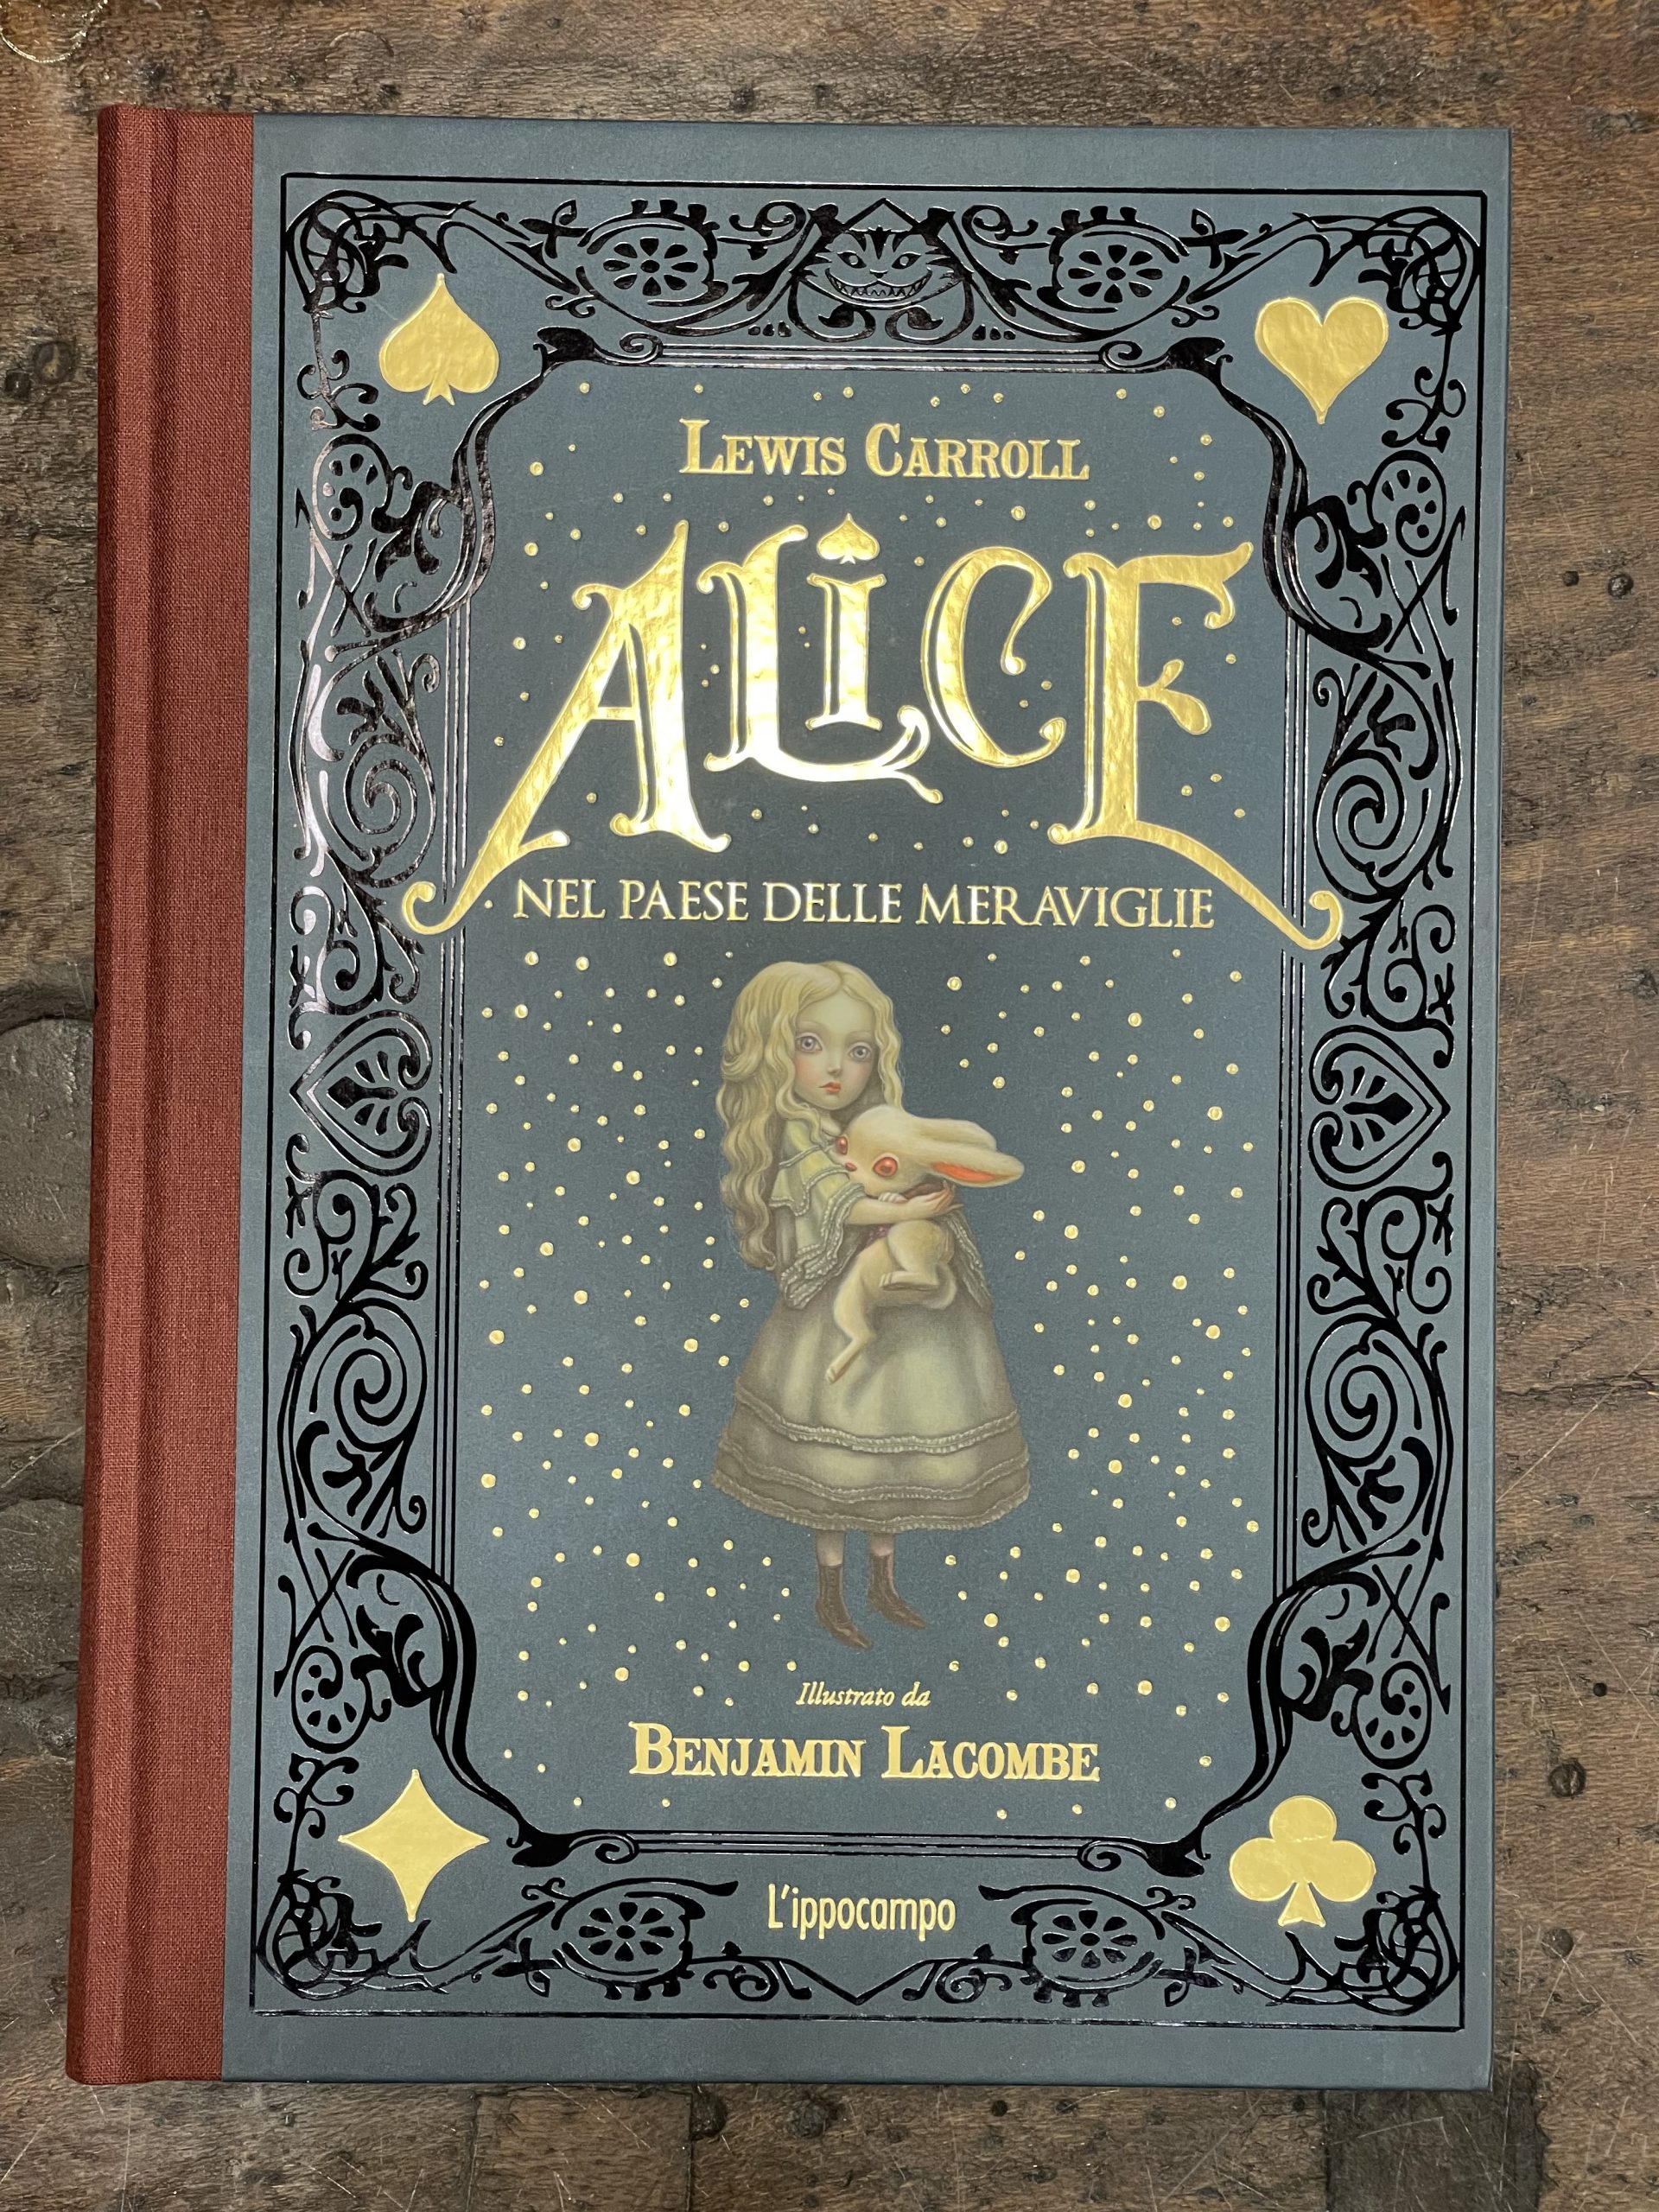 Alice nel paese delle meraviglie – I libri di Eppi